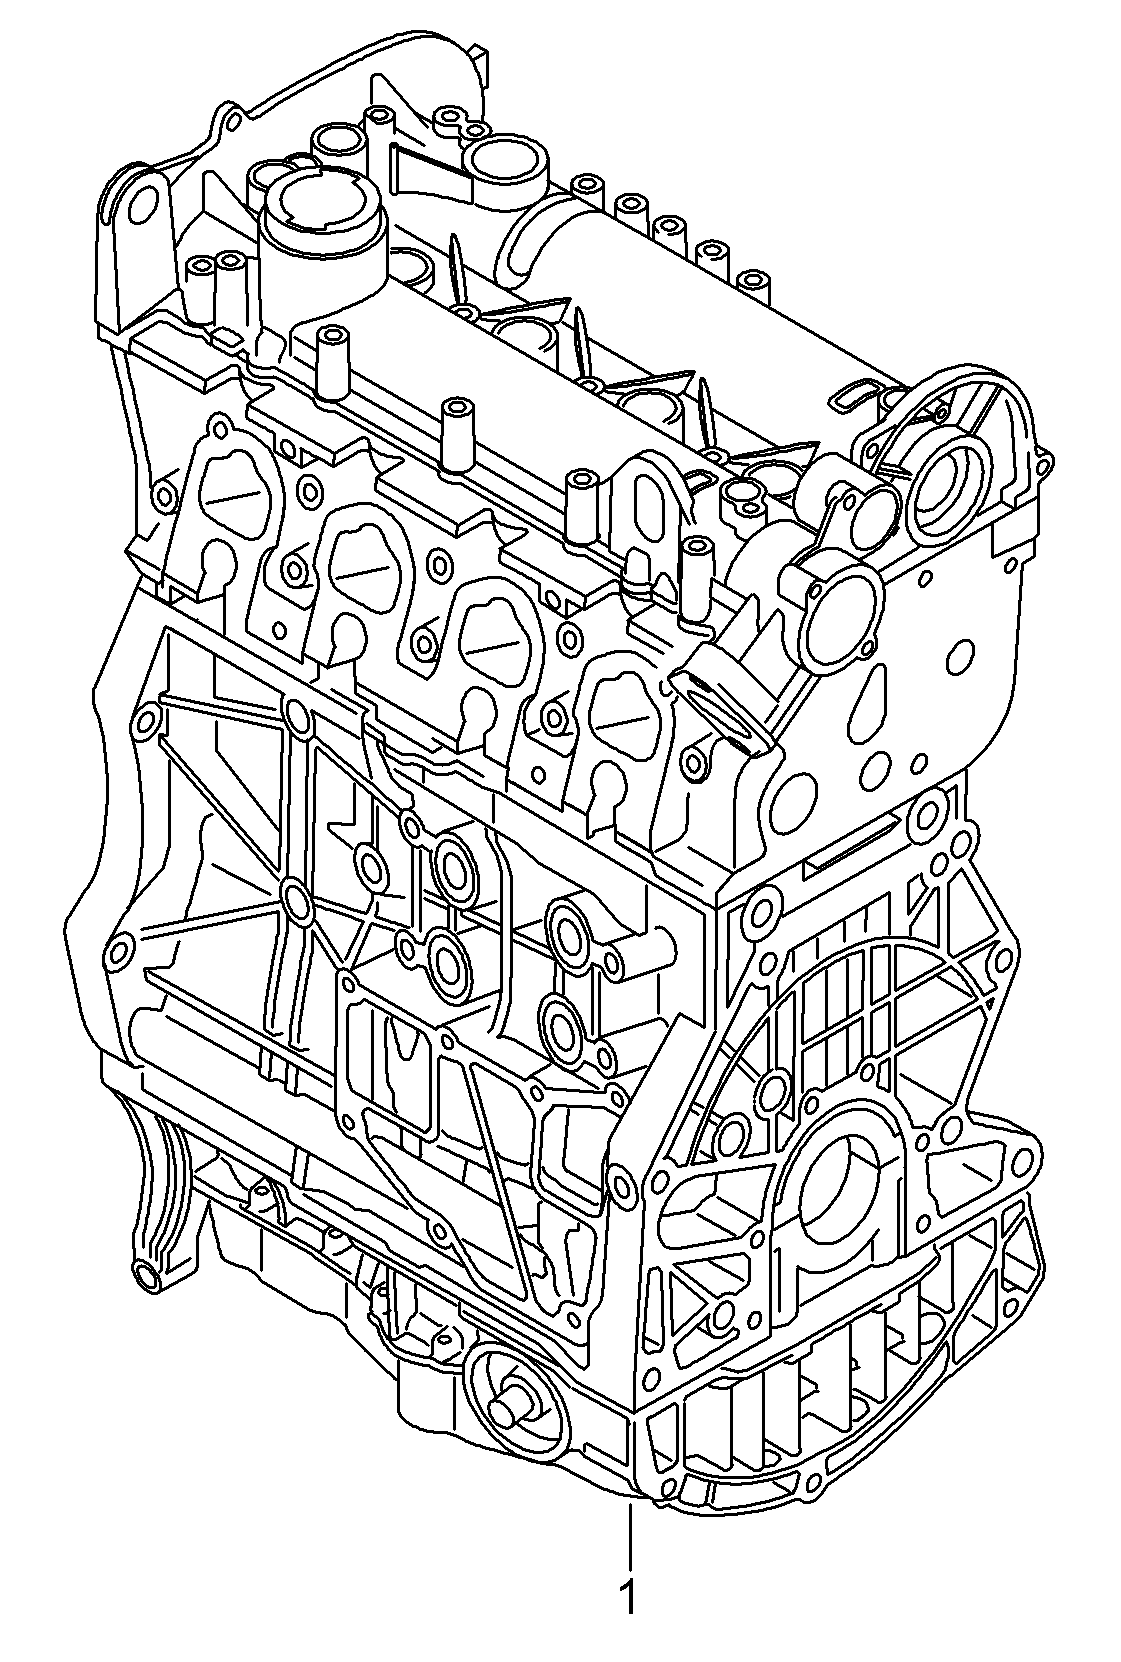 Base engine 1.2 Ltr. - Golf Cabriolet - goc